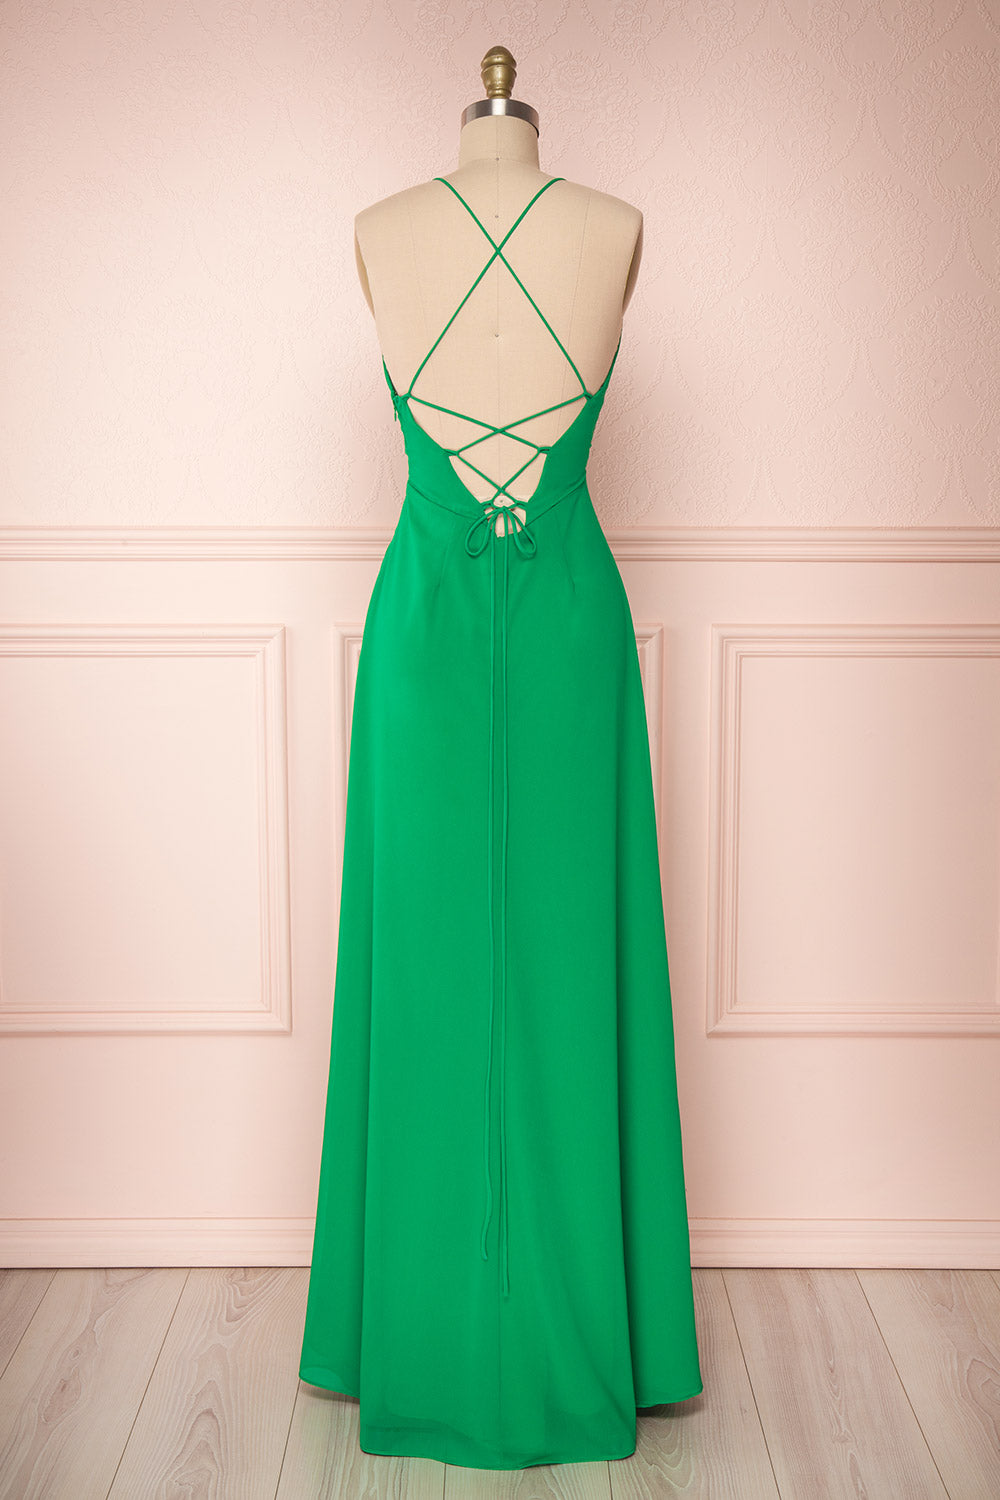 Kekoa Green Chiffon Gown with Ruffles | Boutique 1861 5